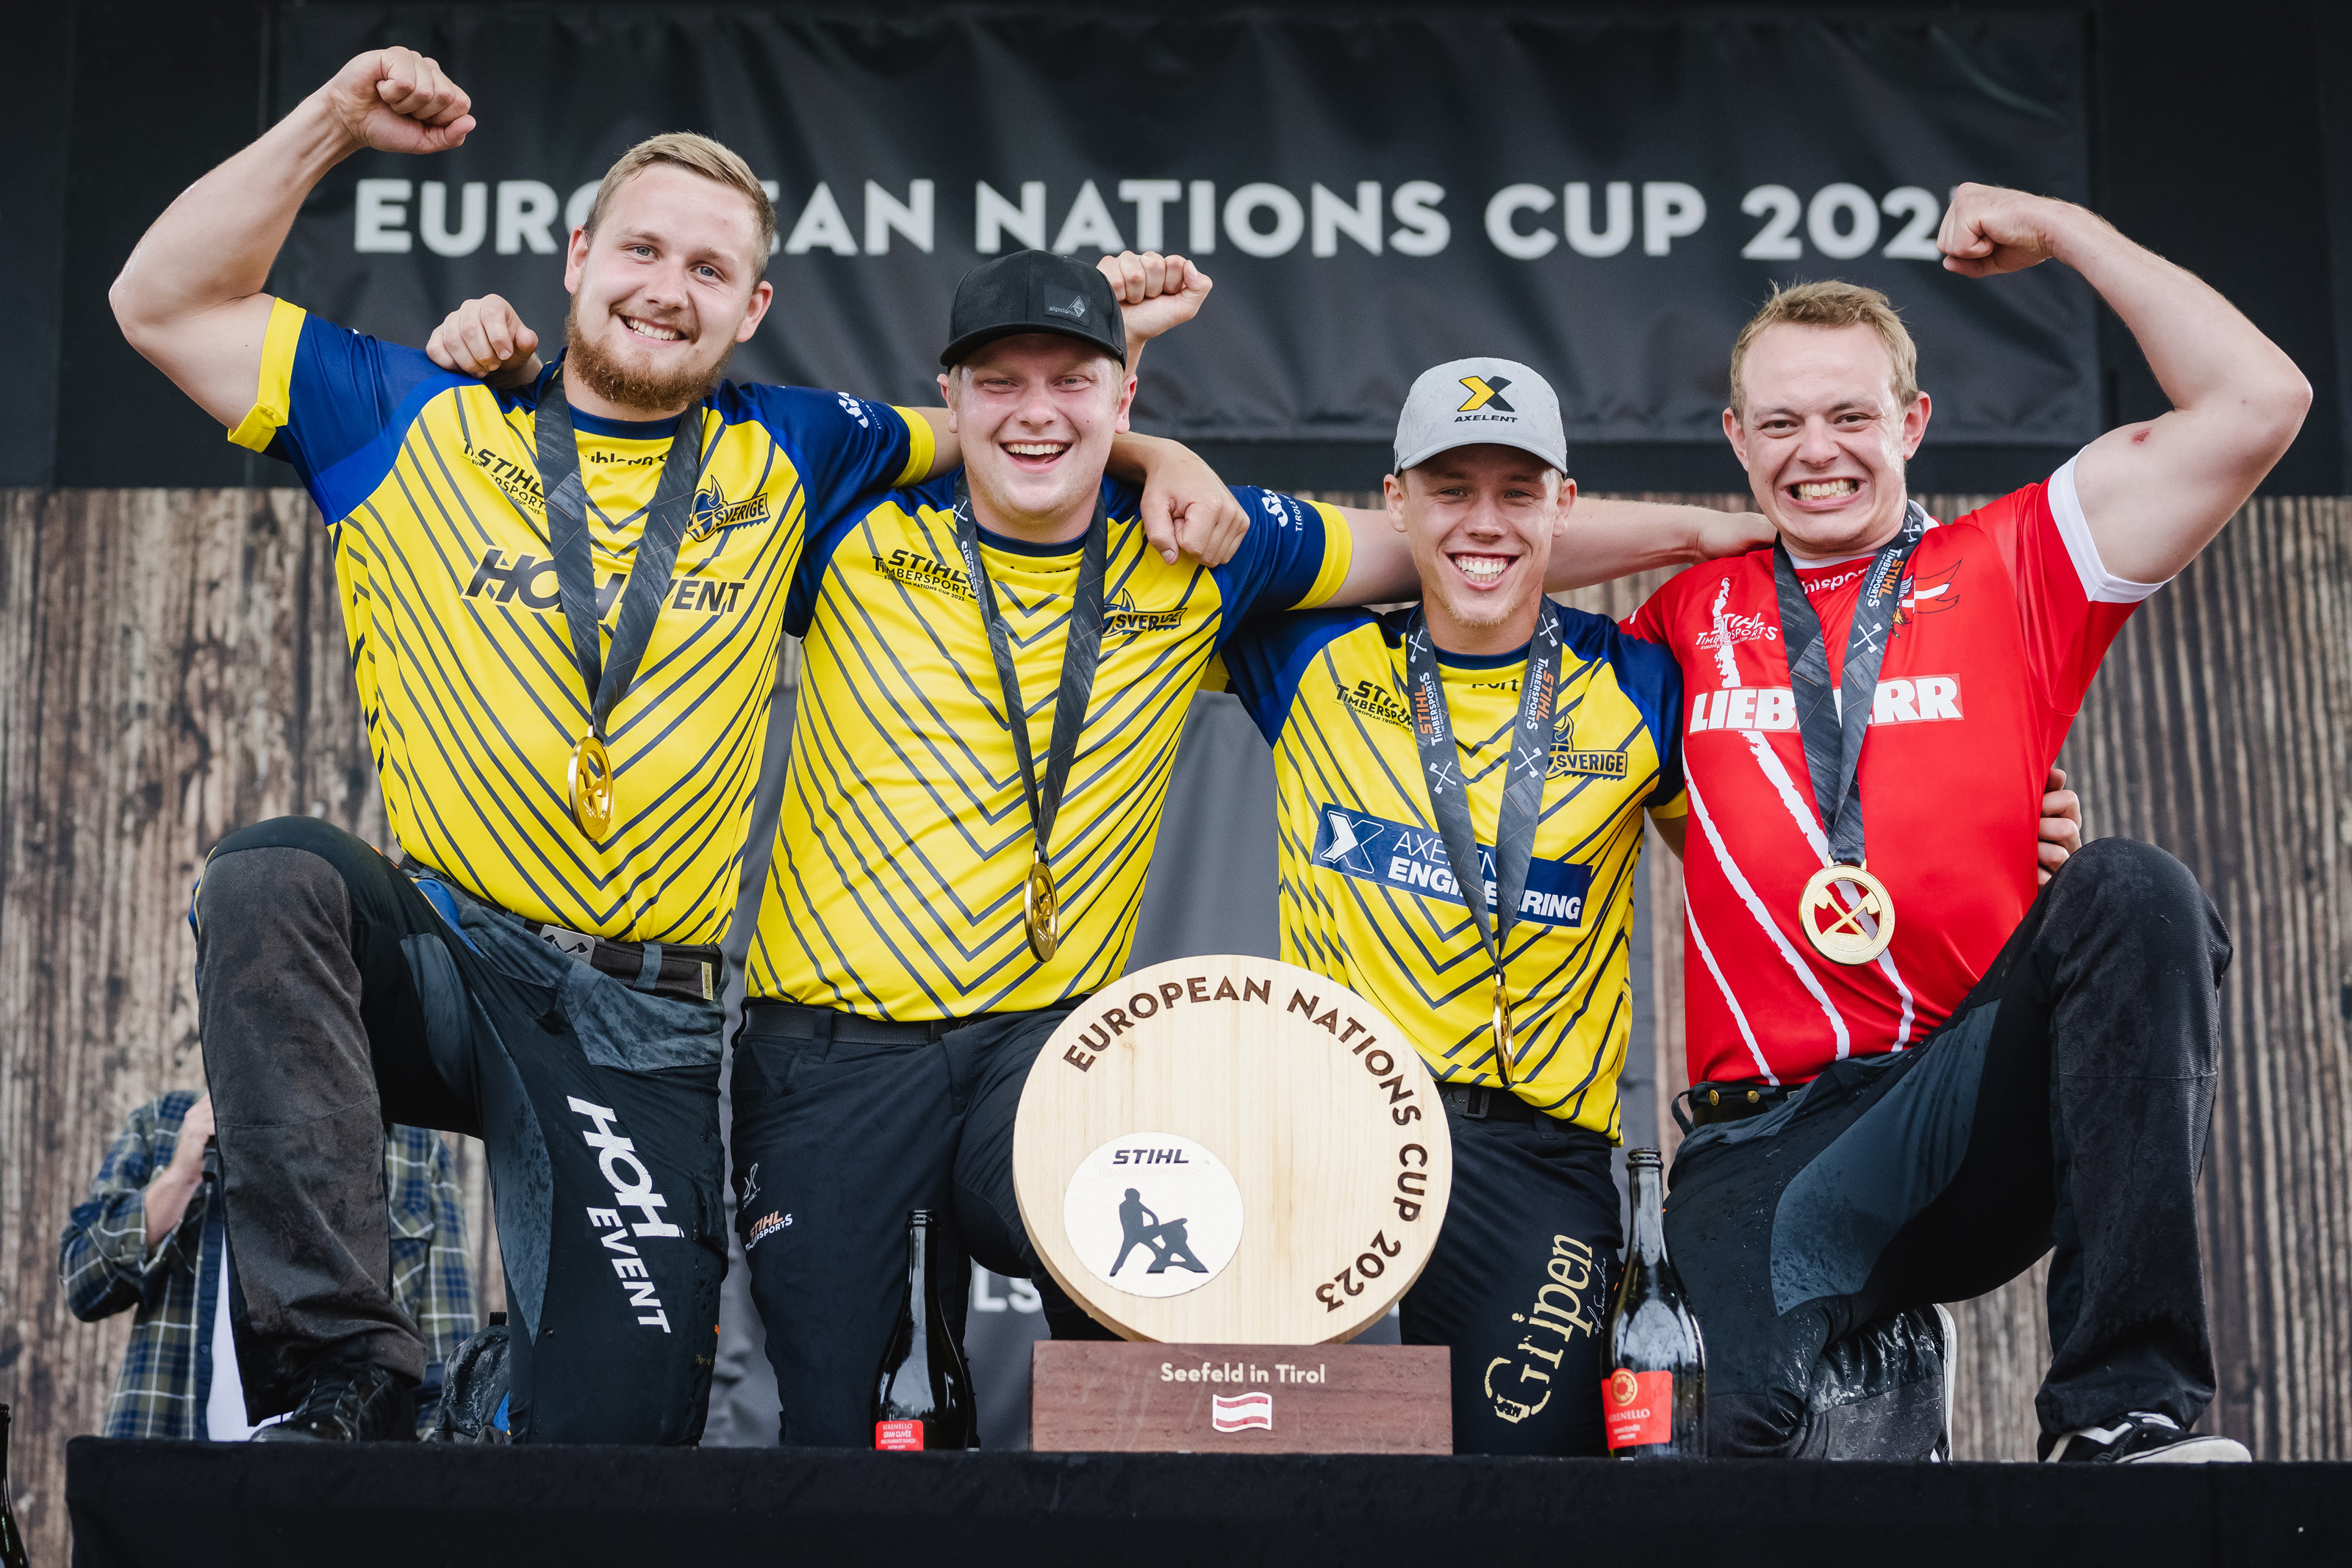 L'équipe scandinave composée d'Emil Hansson, Edvin Karlsson, Ferry Svan et Esben Pedersen (de gauche à droite) défend la Coupe d'Europe des Nations à Seefeld.